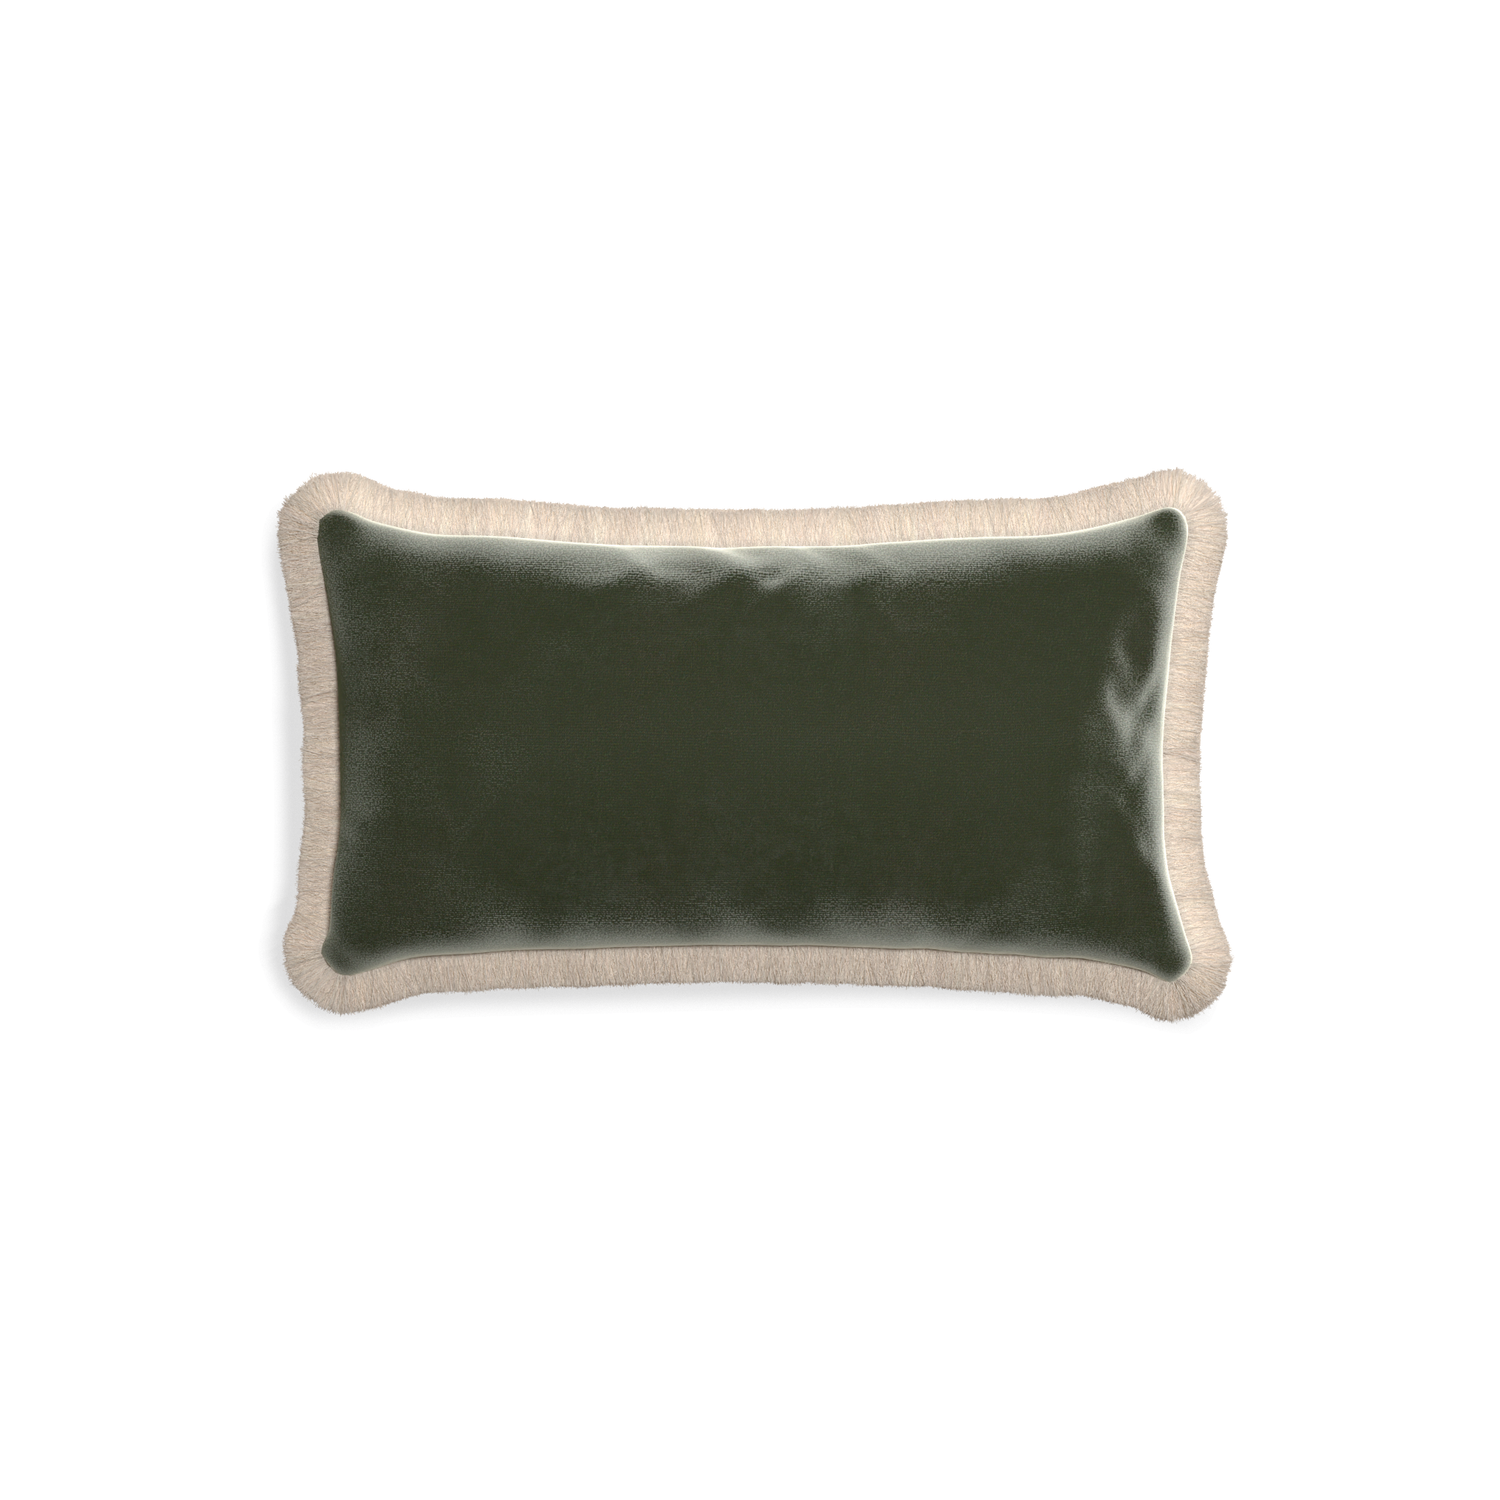 rectangle fern green velvet pillow with cream fringe